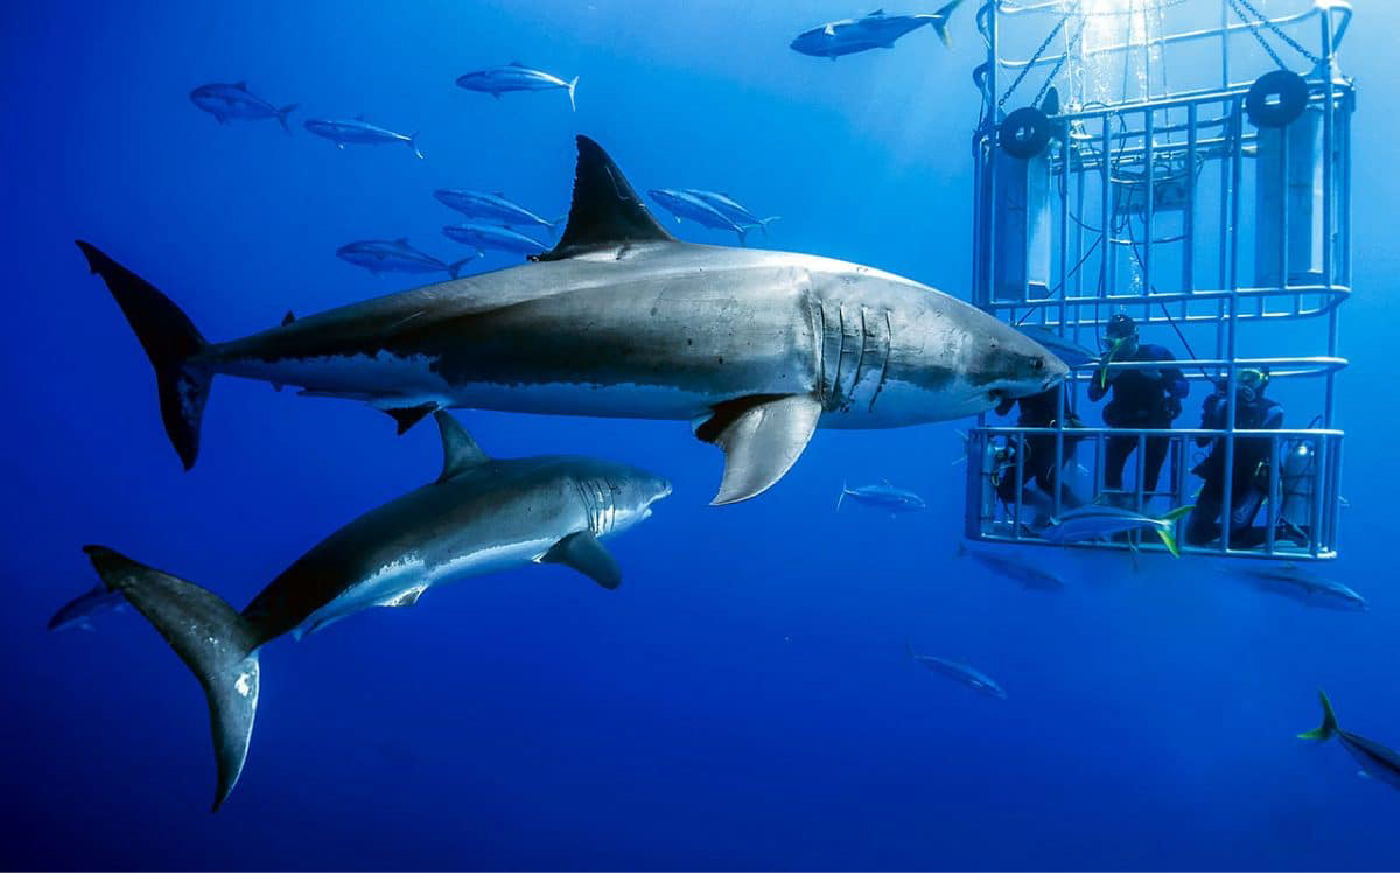 Kinh nghiệm du lịch Úc ngắm cá mập - Thái An Travel 